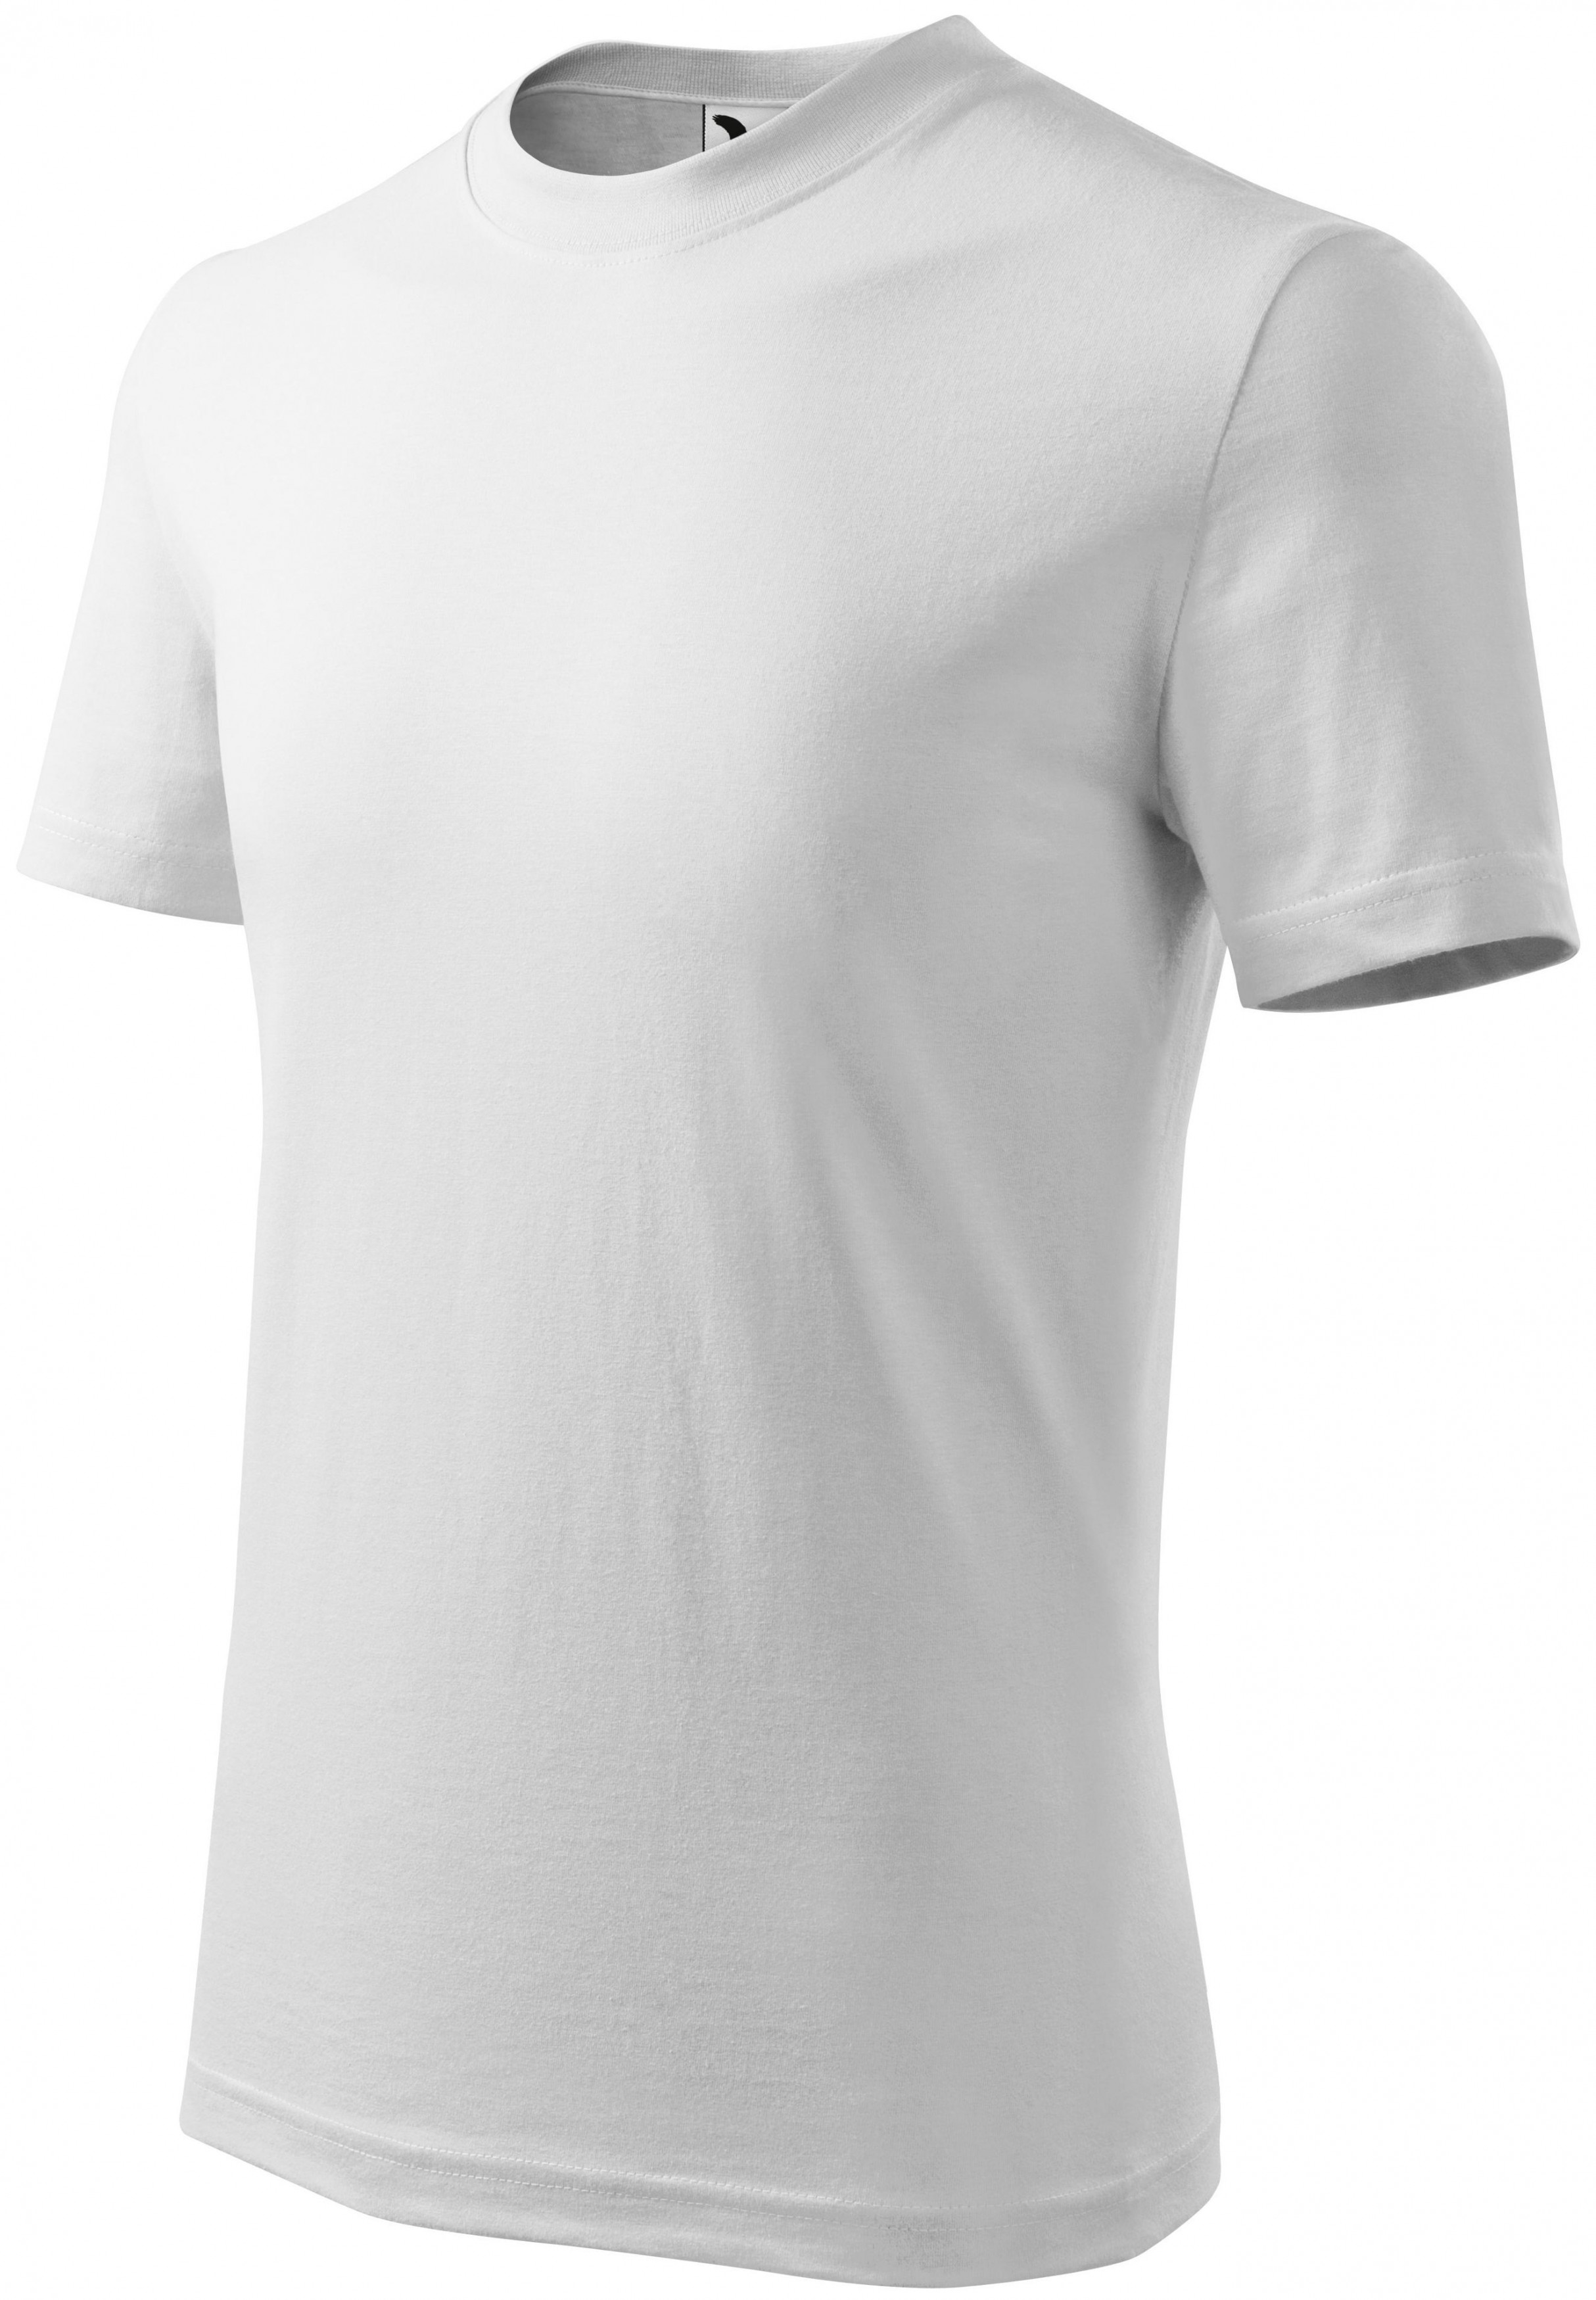 Detské tričko jednoduché, biela, 134cm / 8rokov